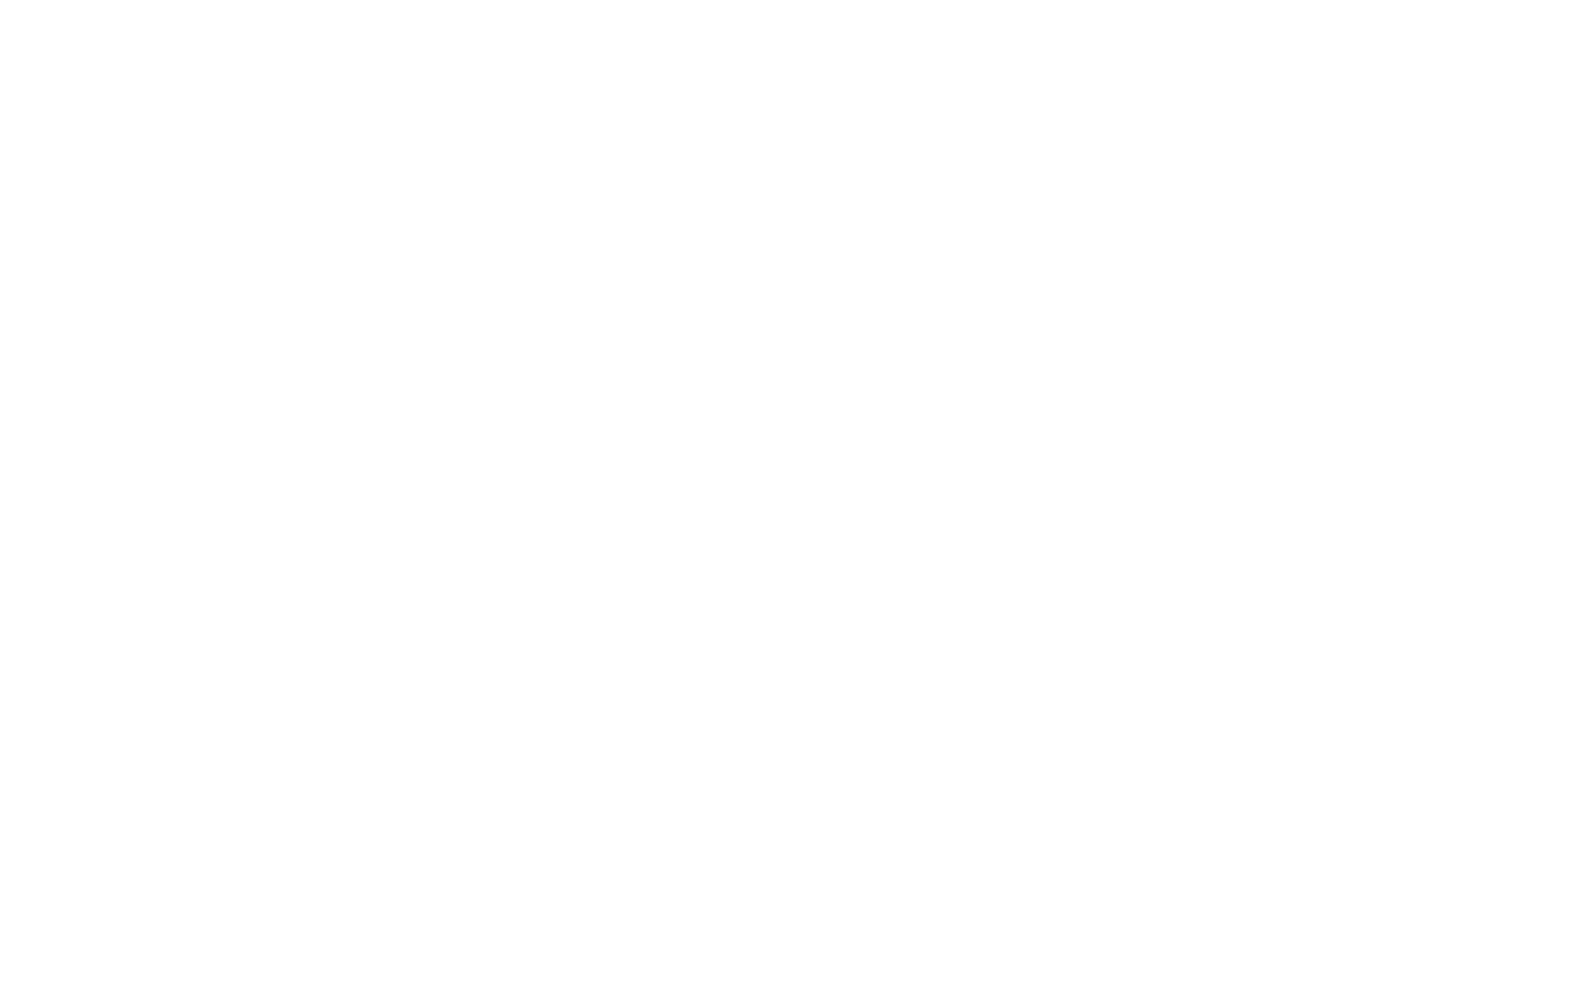 Manta Ray Consulting